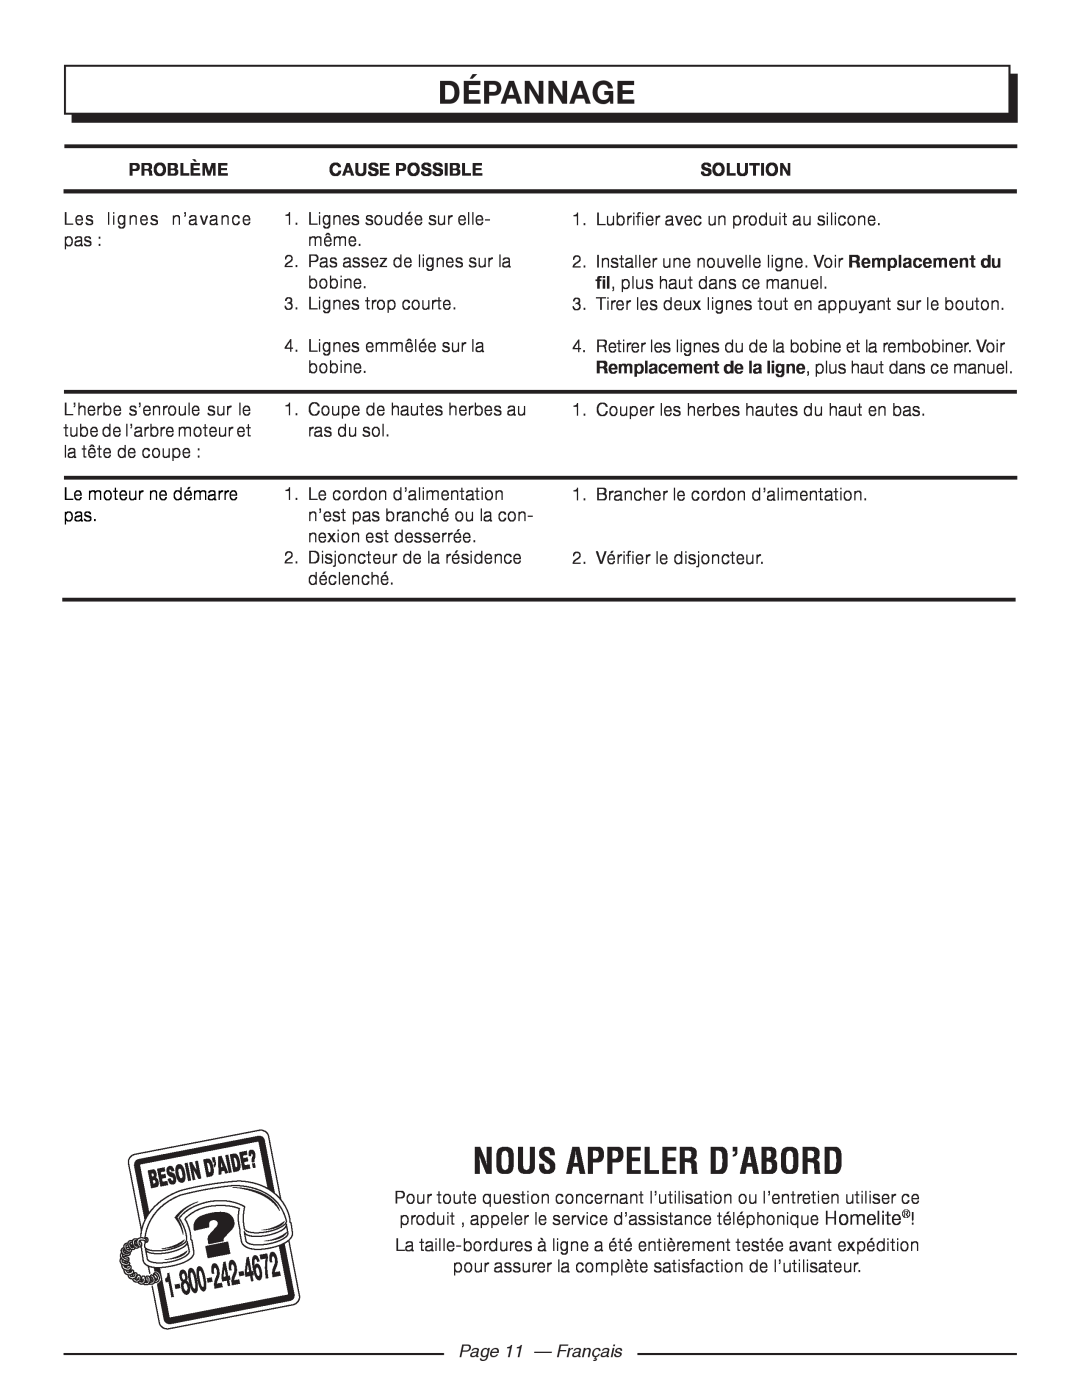 Homelite UT41112 Nous Appeler D’Abord, Dépannage, 4672, Problème, Cause Possible, D’Aide?, Page 11 - Français, Solution 